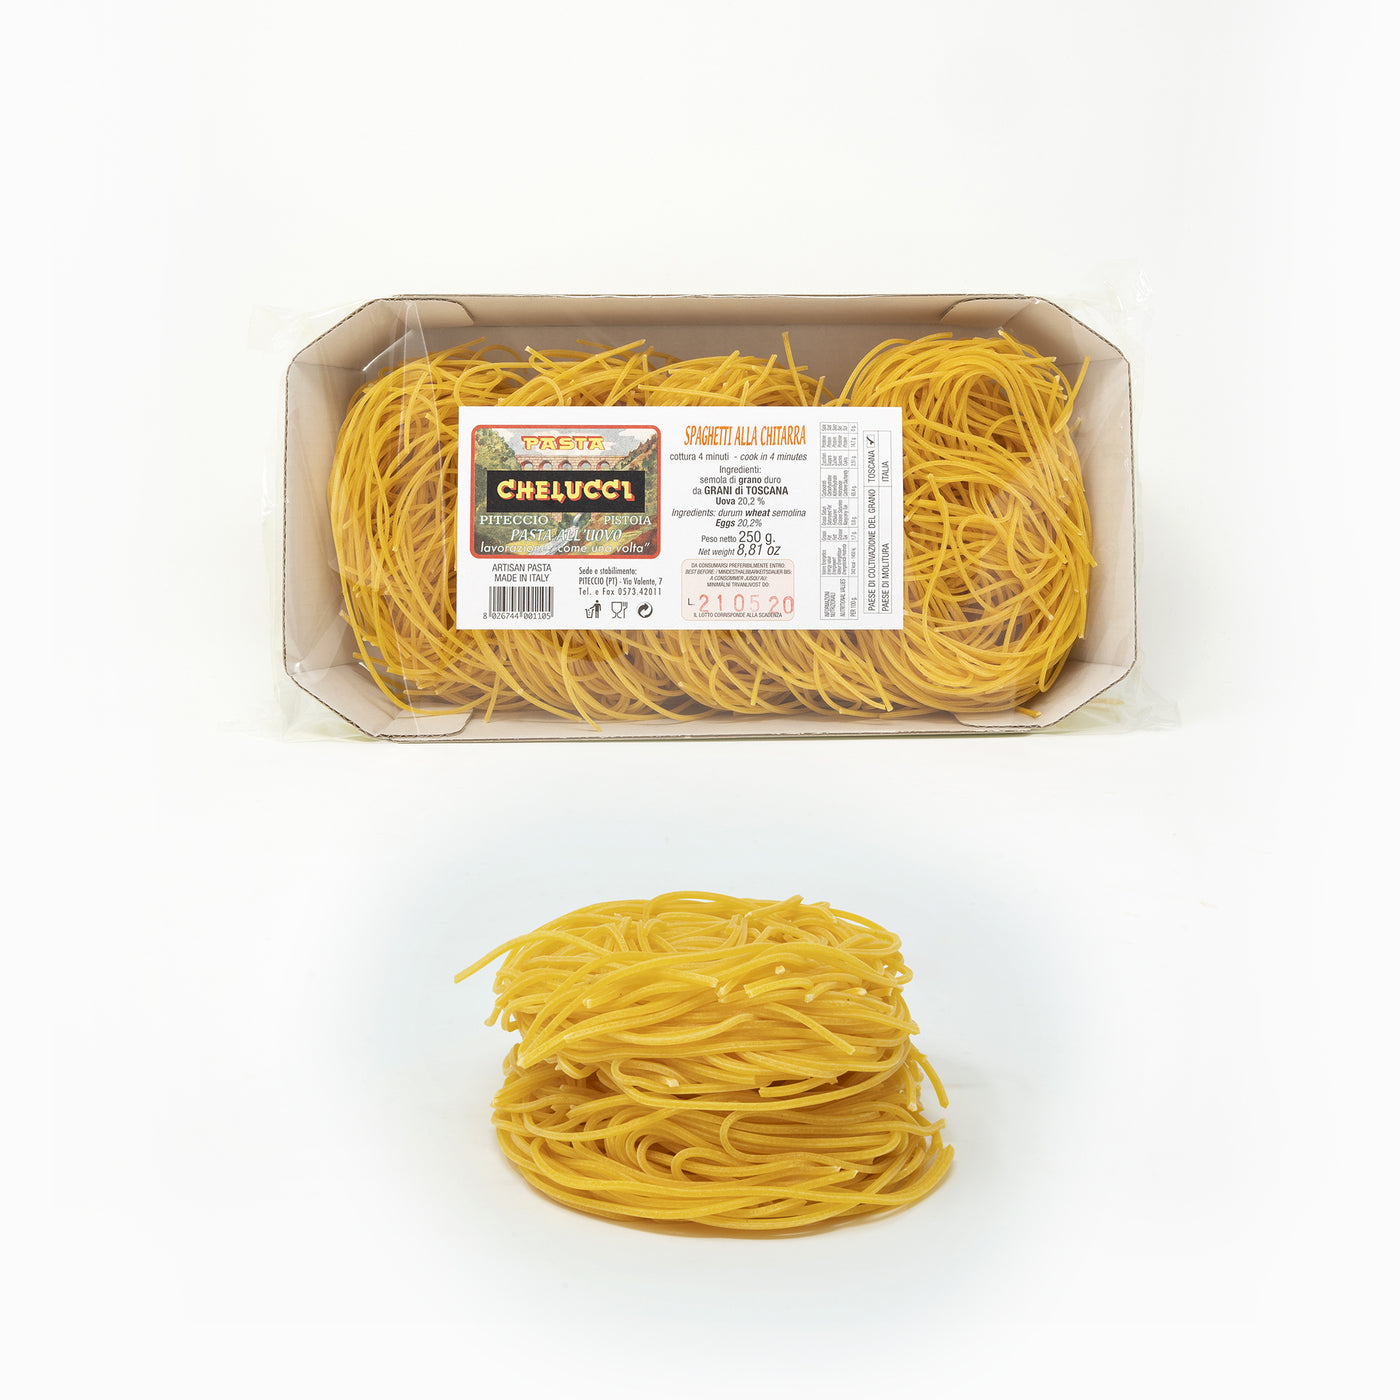 Spaghetti alla Chitarra all'Uovo